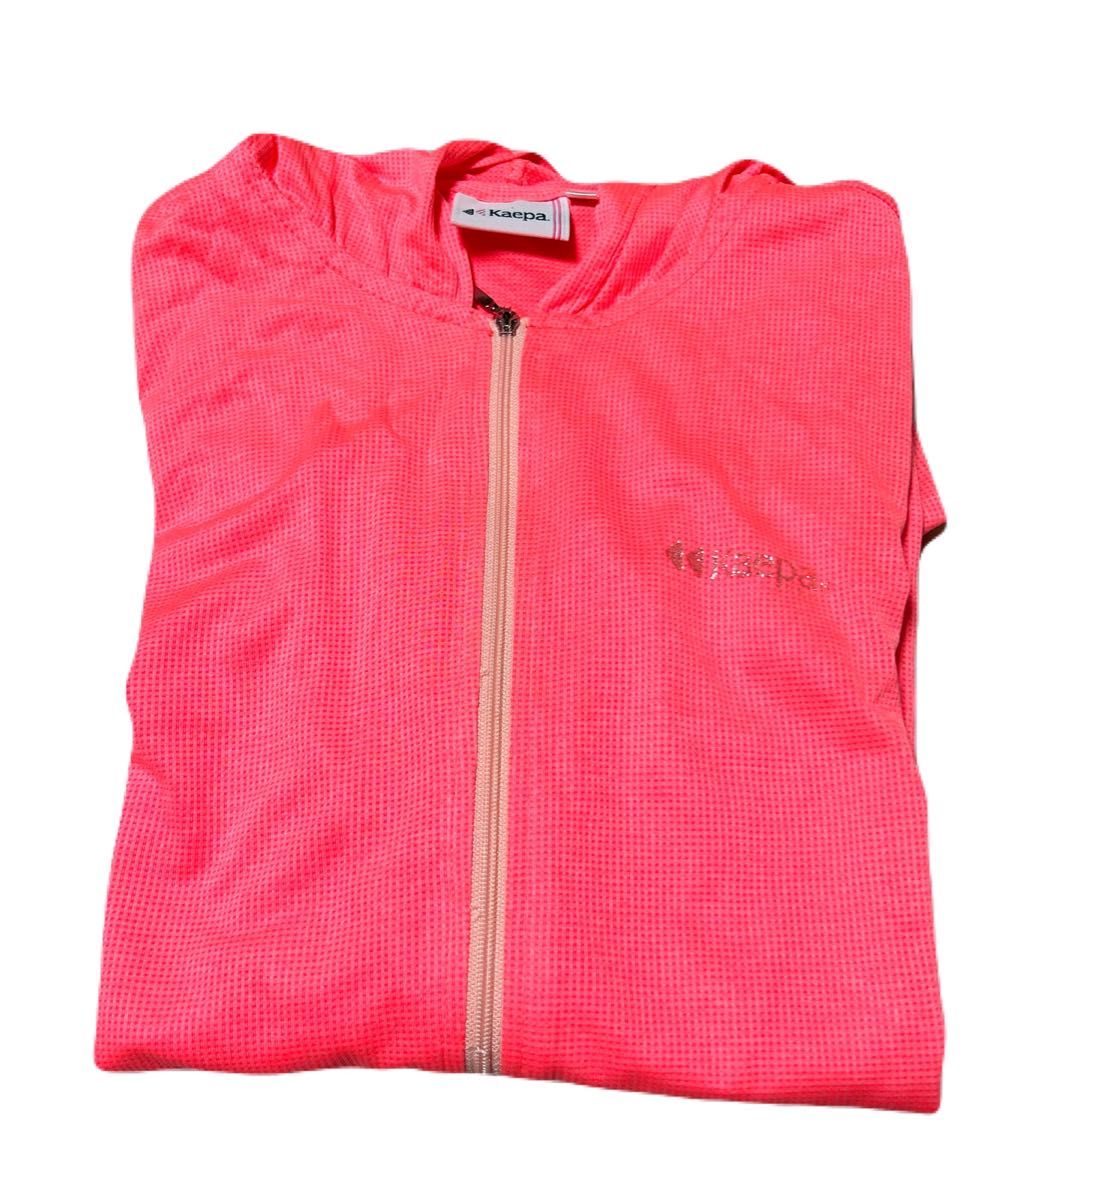 Kaepa ケイパ ランニングジャケット ウィンドブレーカー 薄手  レディース M ピンク 蛍光 ランニング マラソン  長袖